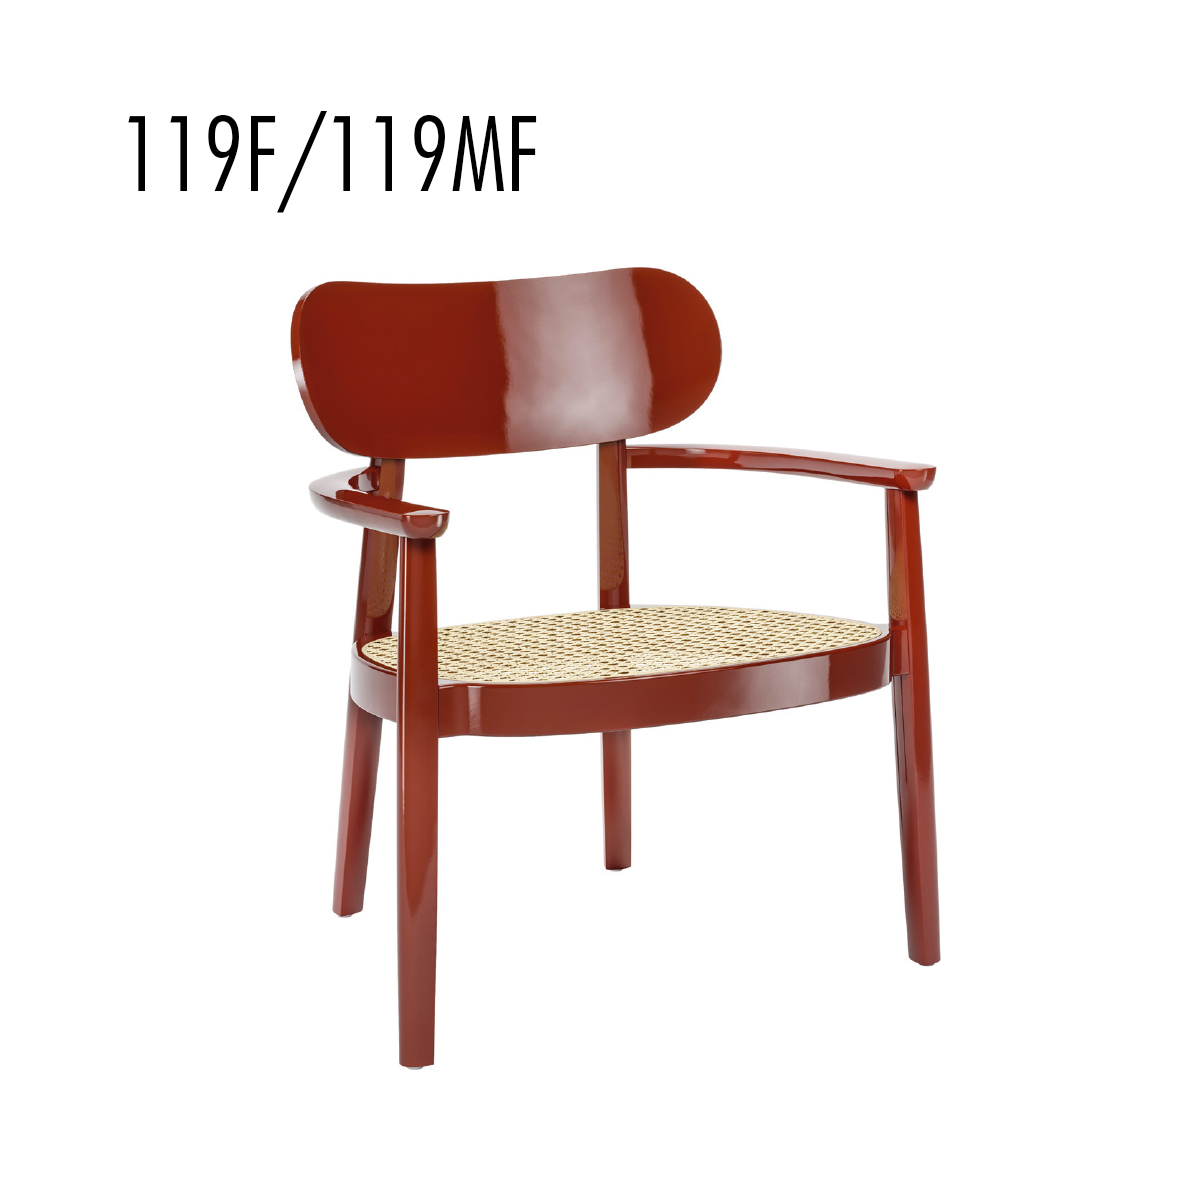 Möbel TAUSCH - einrichten - Stuhl 119F